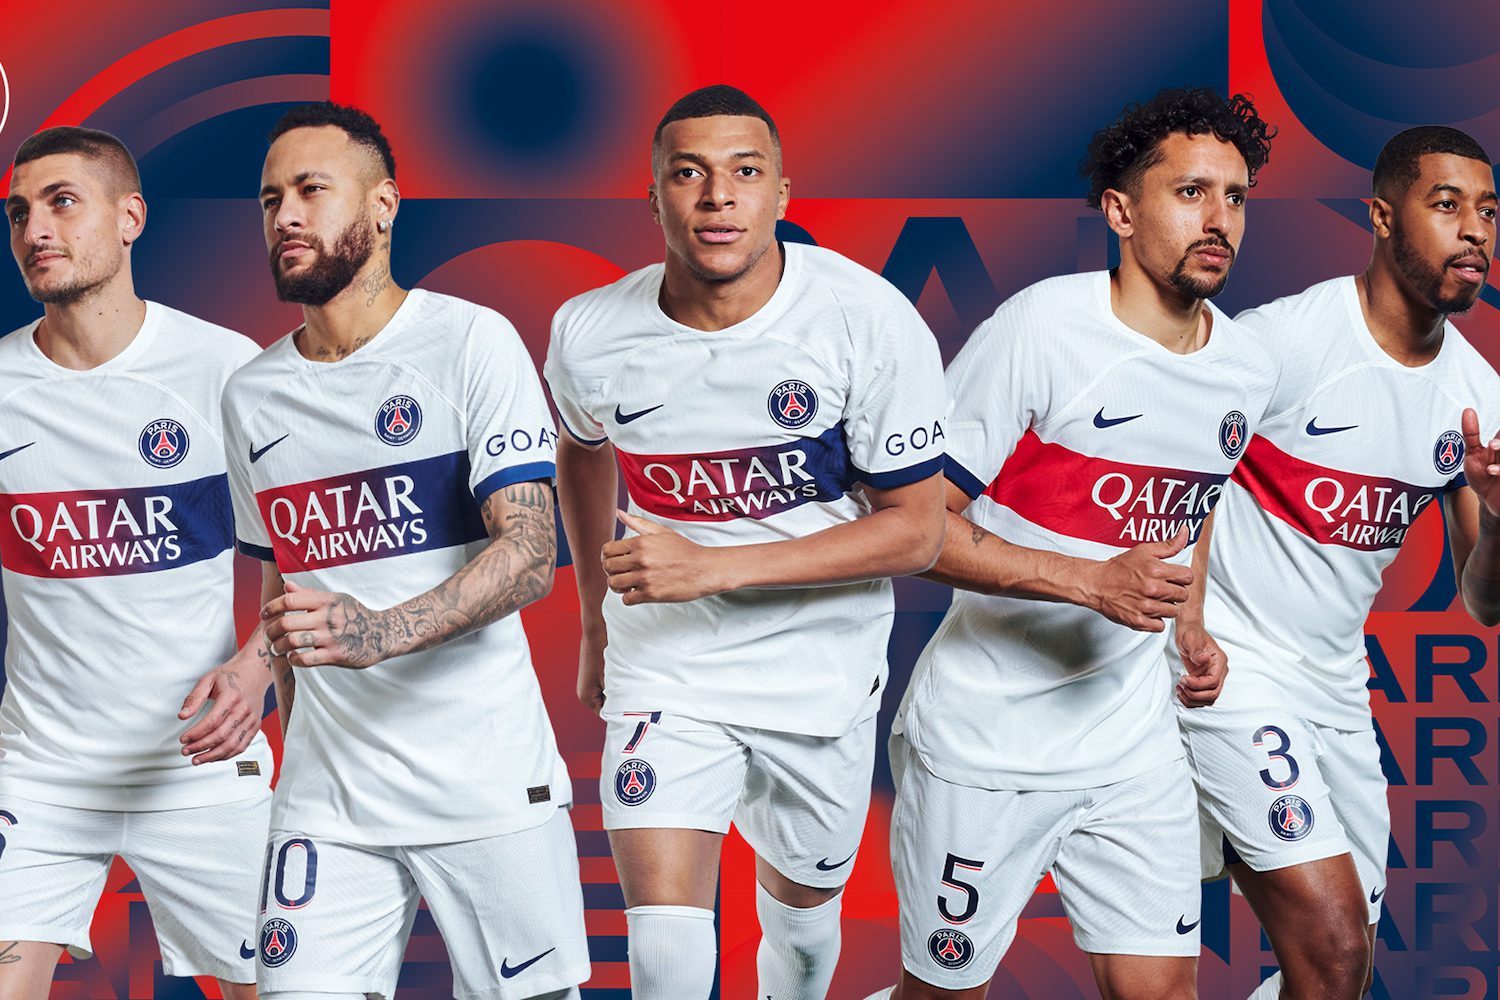 Vente de maillots, sponsoring, Urssaf… le PSG publie son rapport